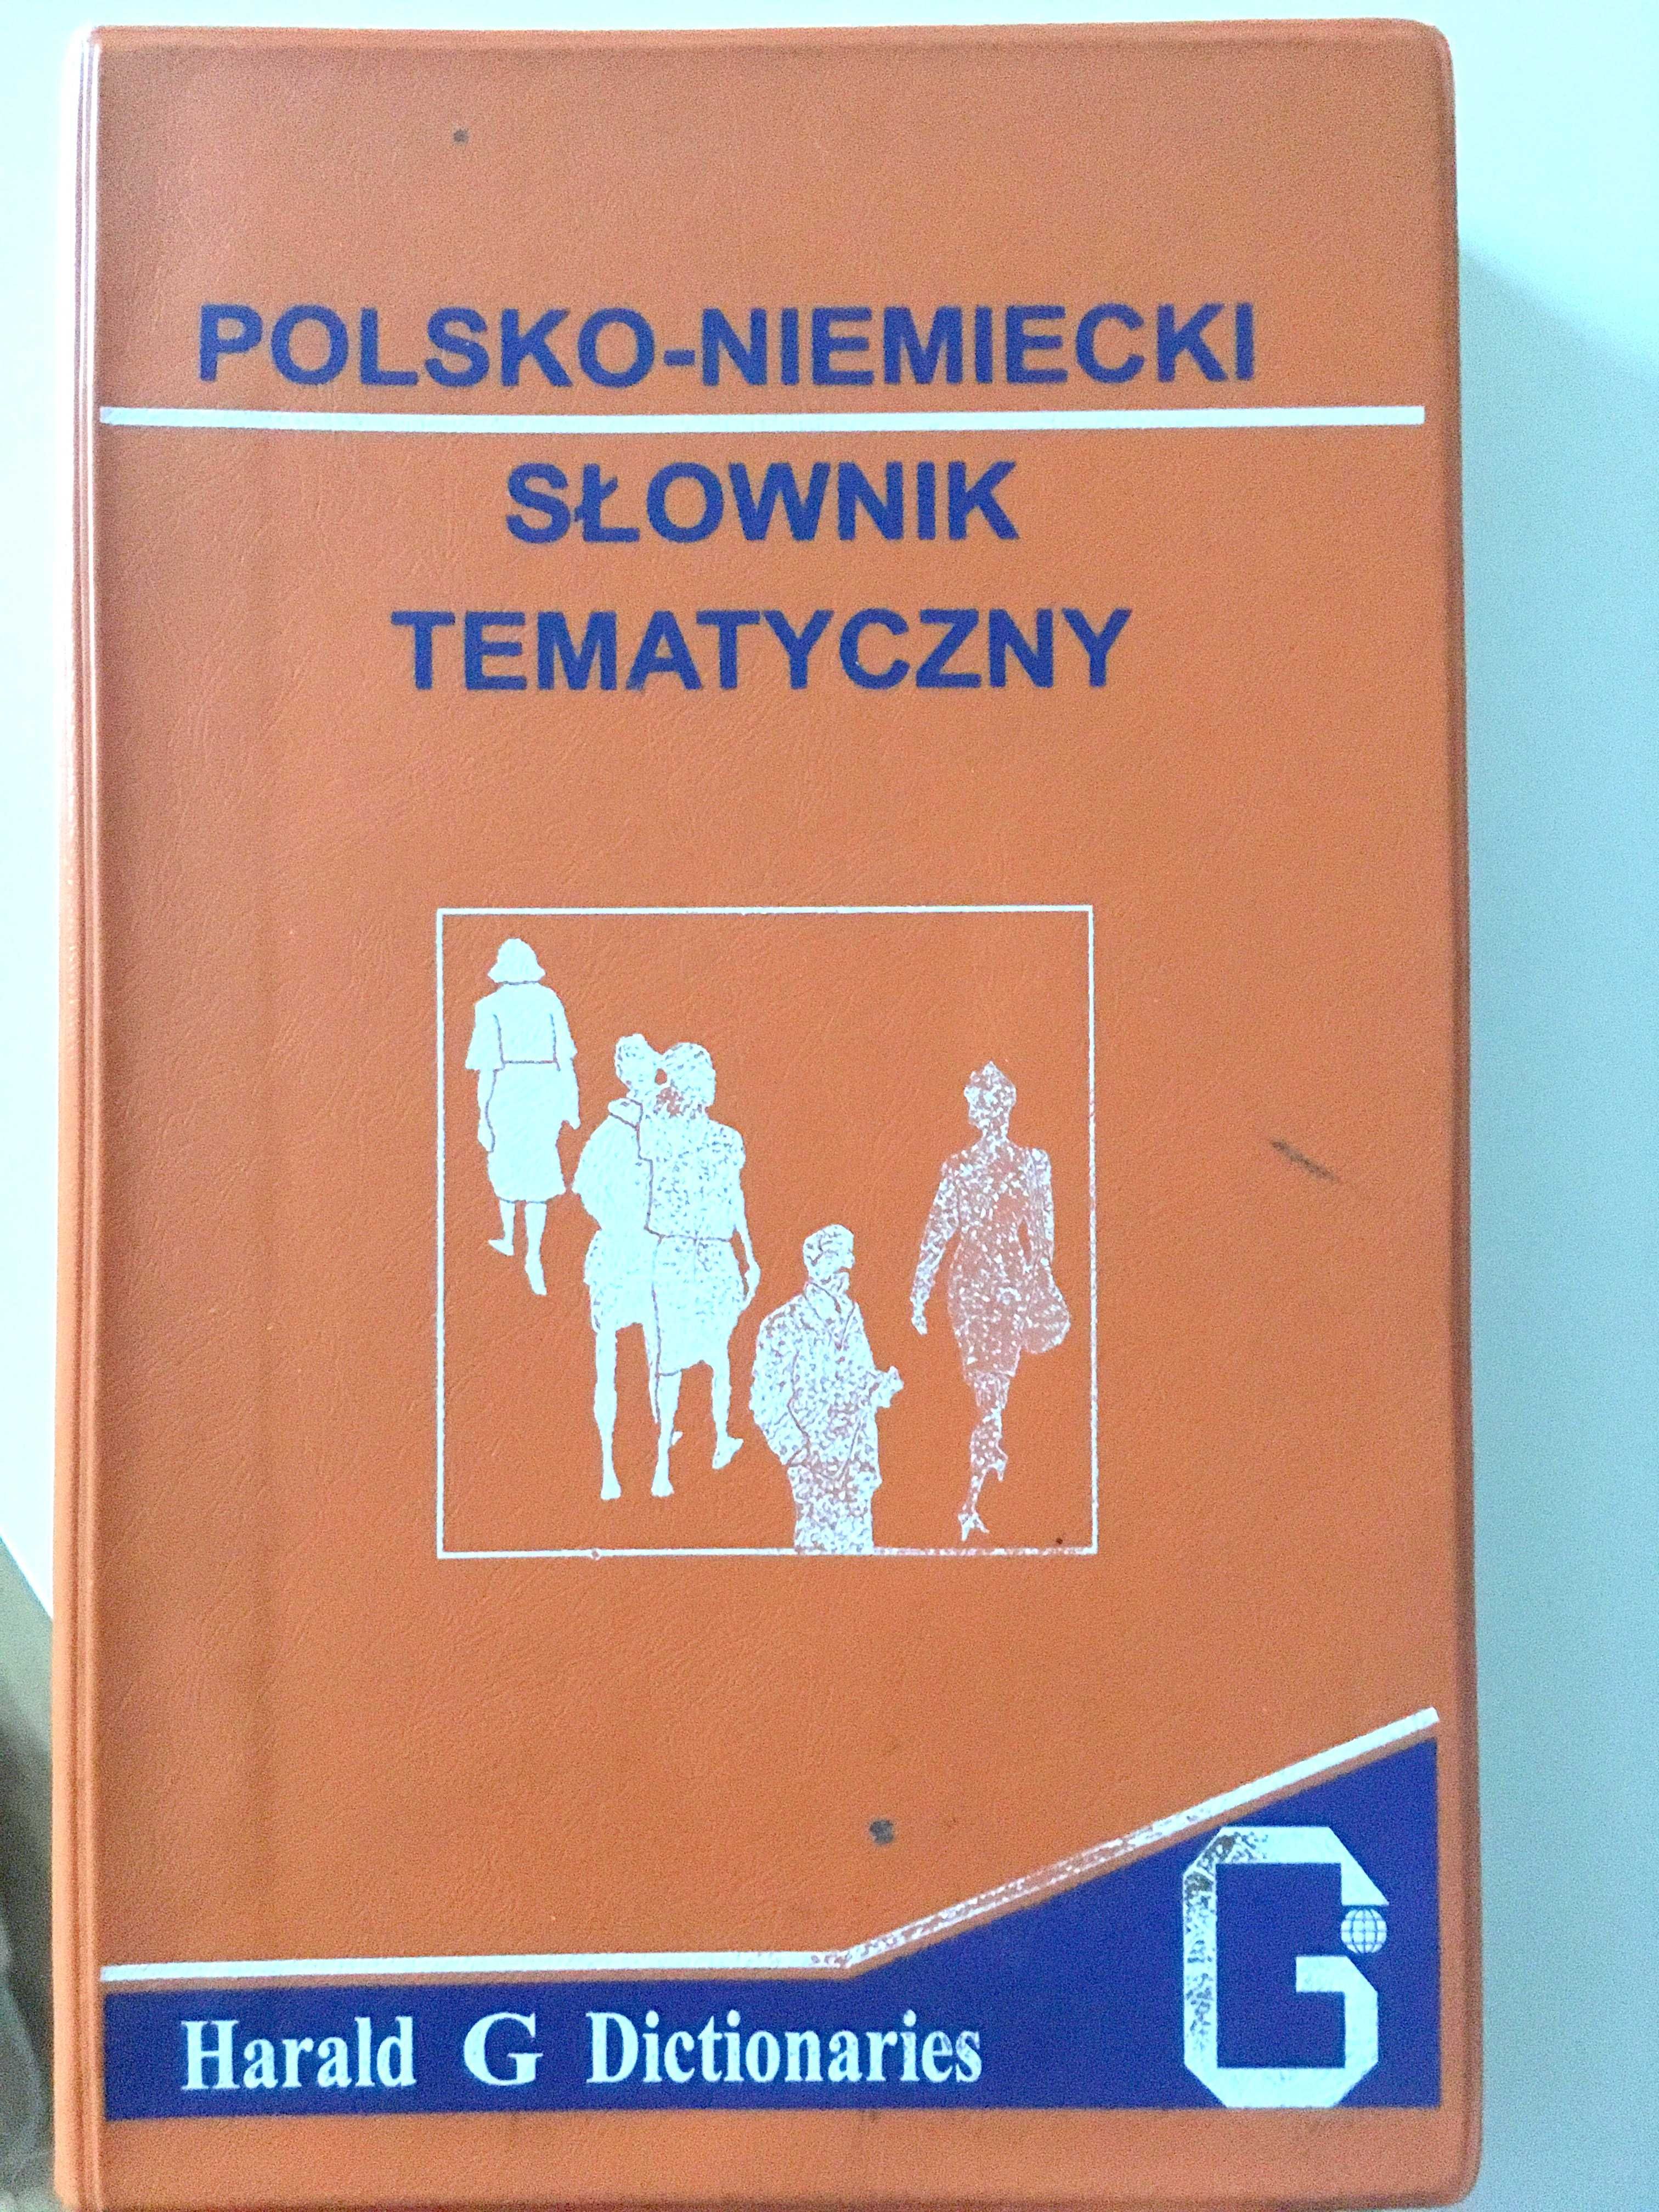 Polsko-niemiecki słownik TEMATYCZNY wytrzymała okładka pcv